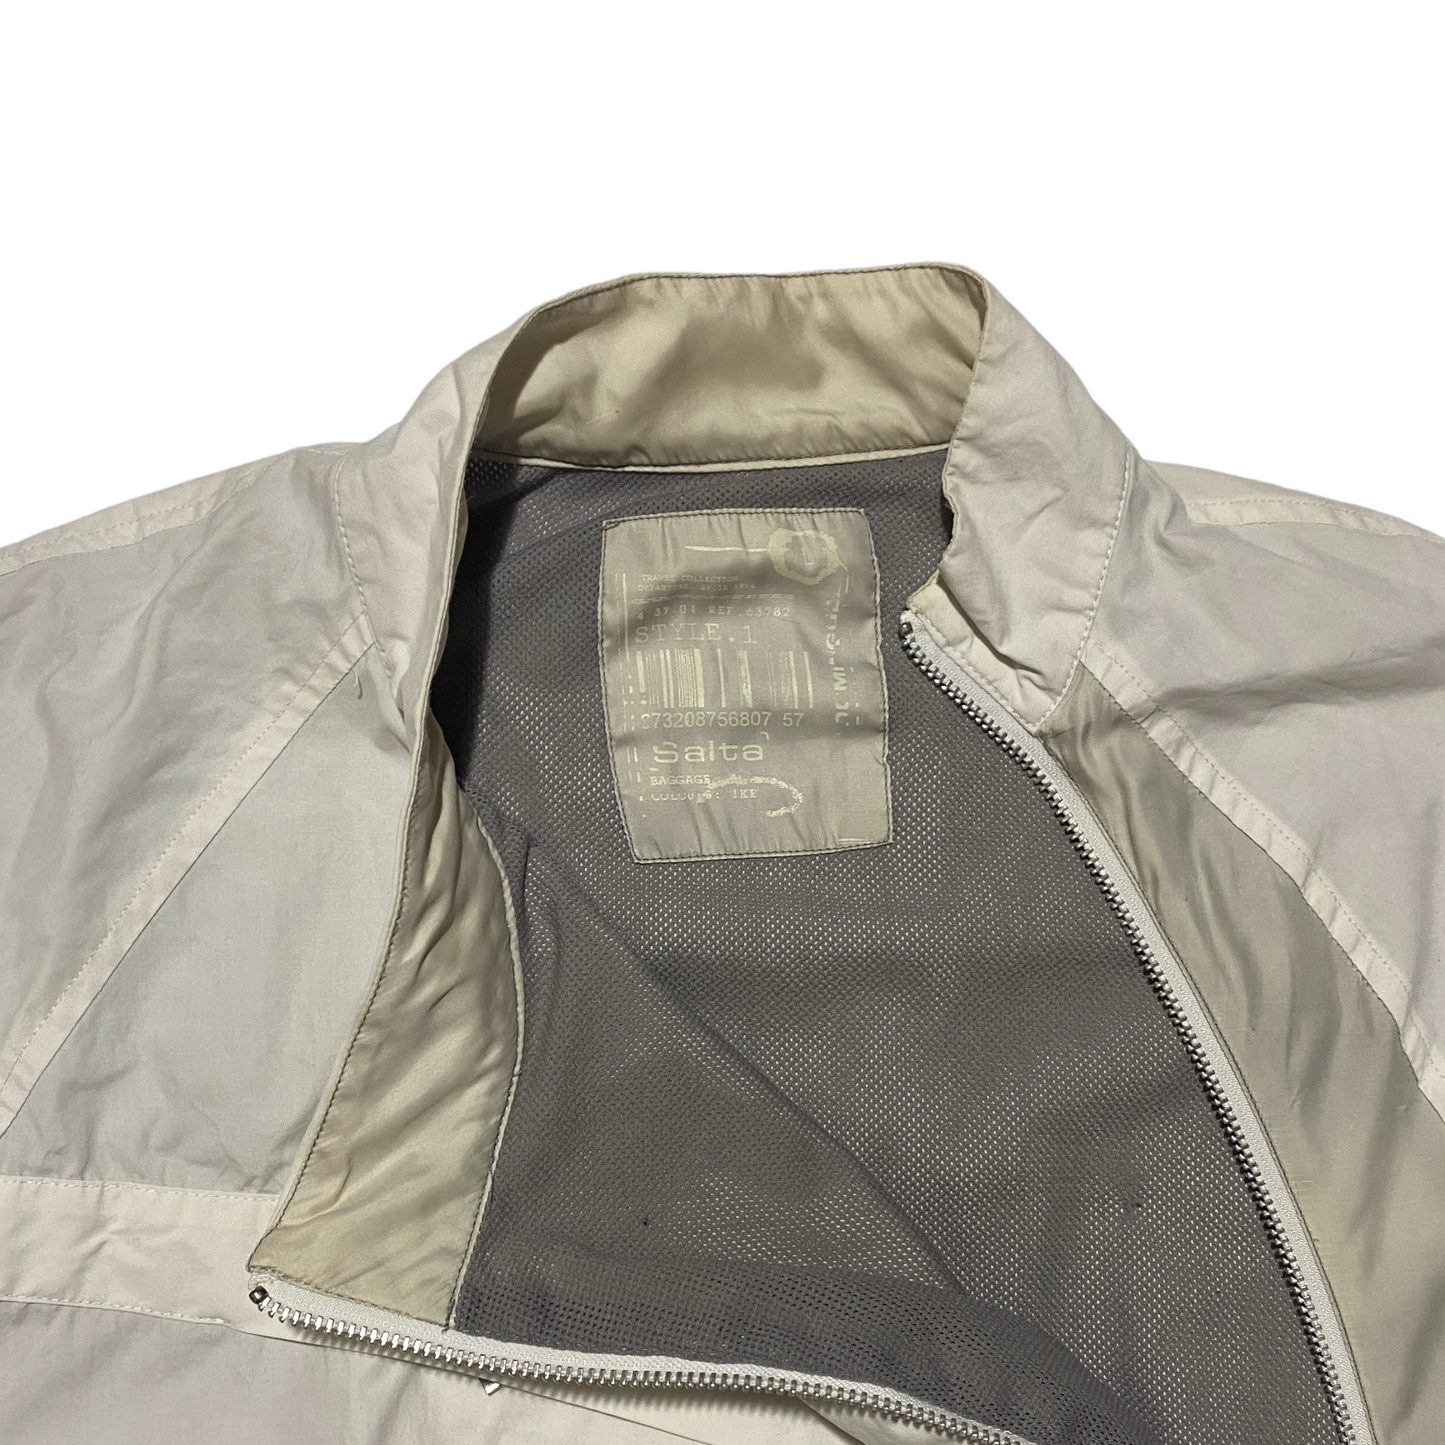 2005 Adolfo Dominguez "Salta" Asymmetric Jacket (L)